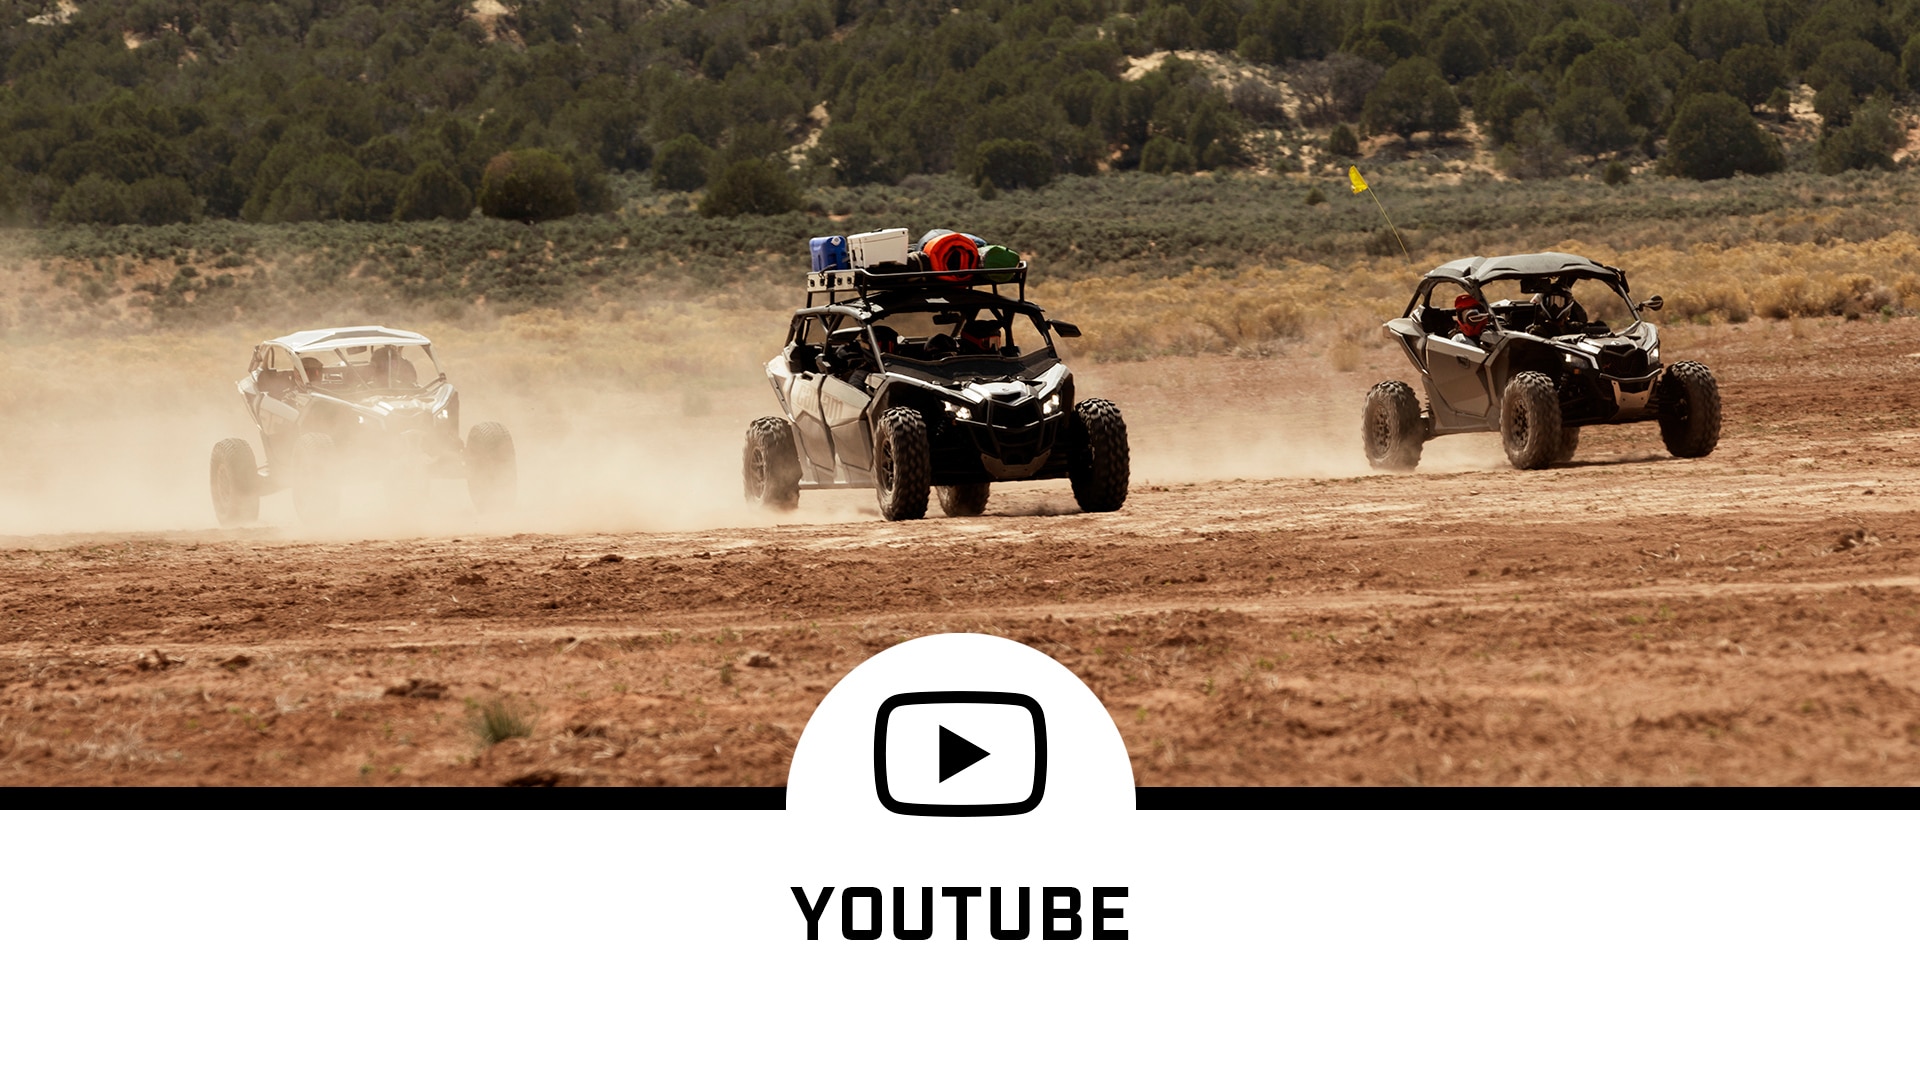 Drie Can-Am-voertuigen op een stuk zand en een YouTube-logo voor sociale media